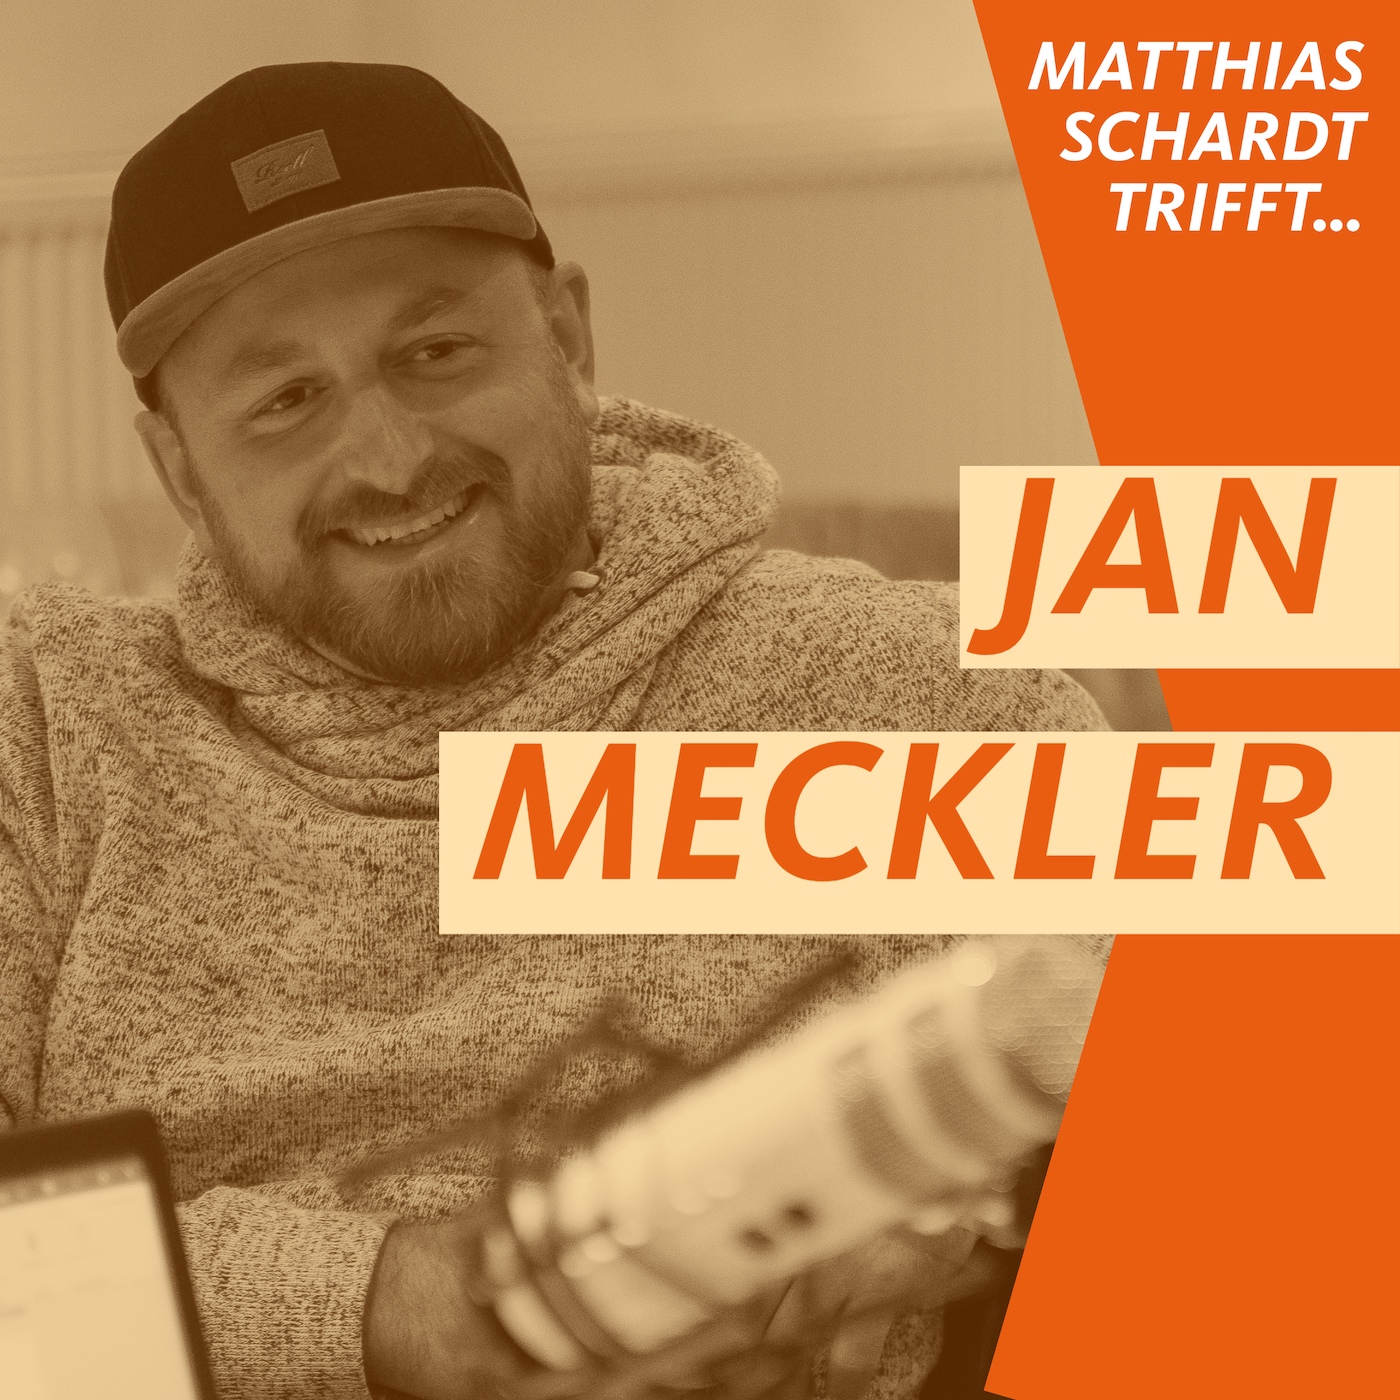 Matthias Schardt trifft nochmal Jan Meckler